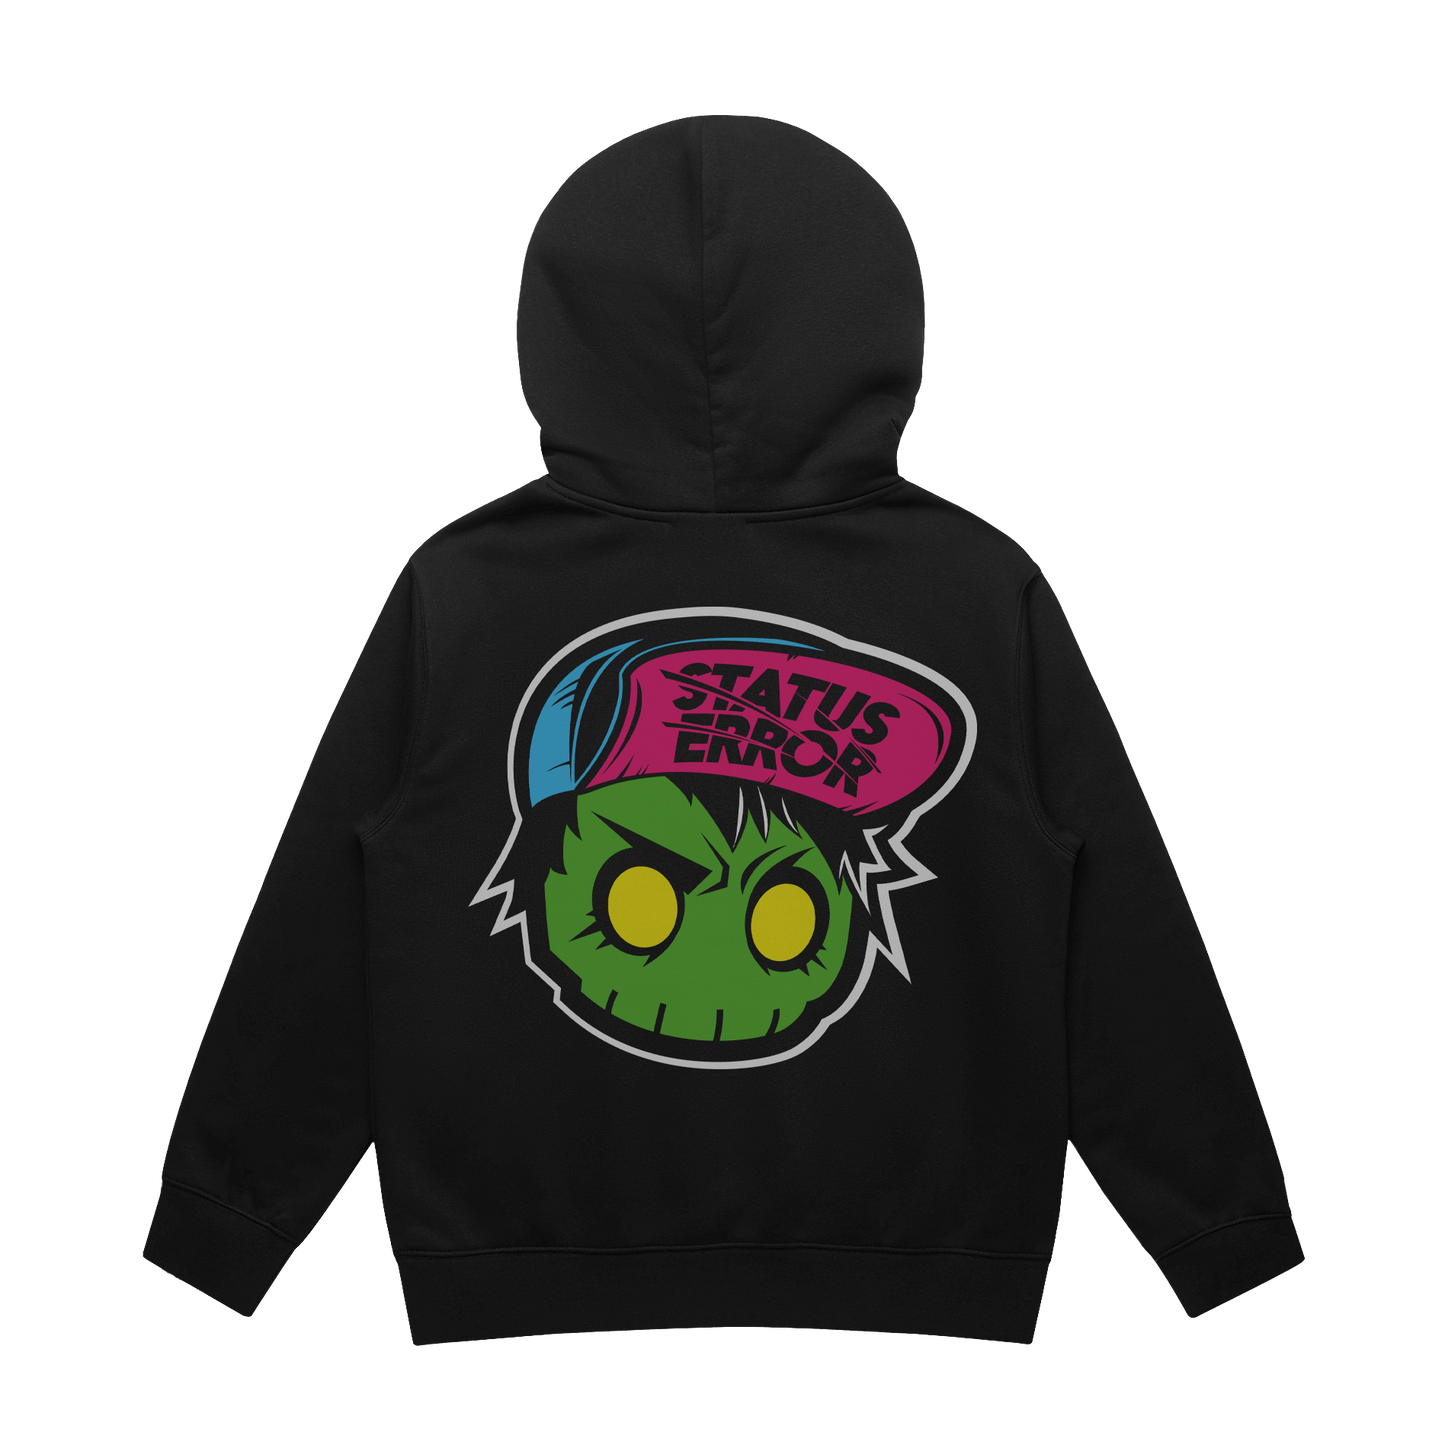 Status Error New Skull Hooded Sweater (Kids)